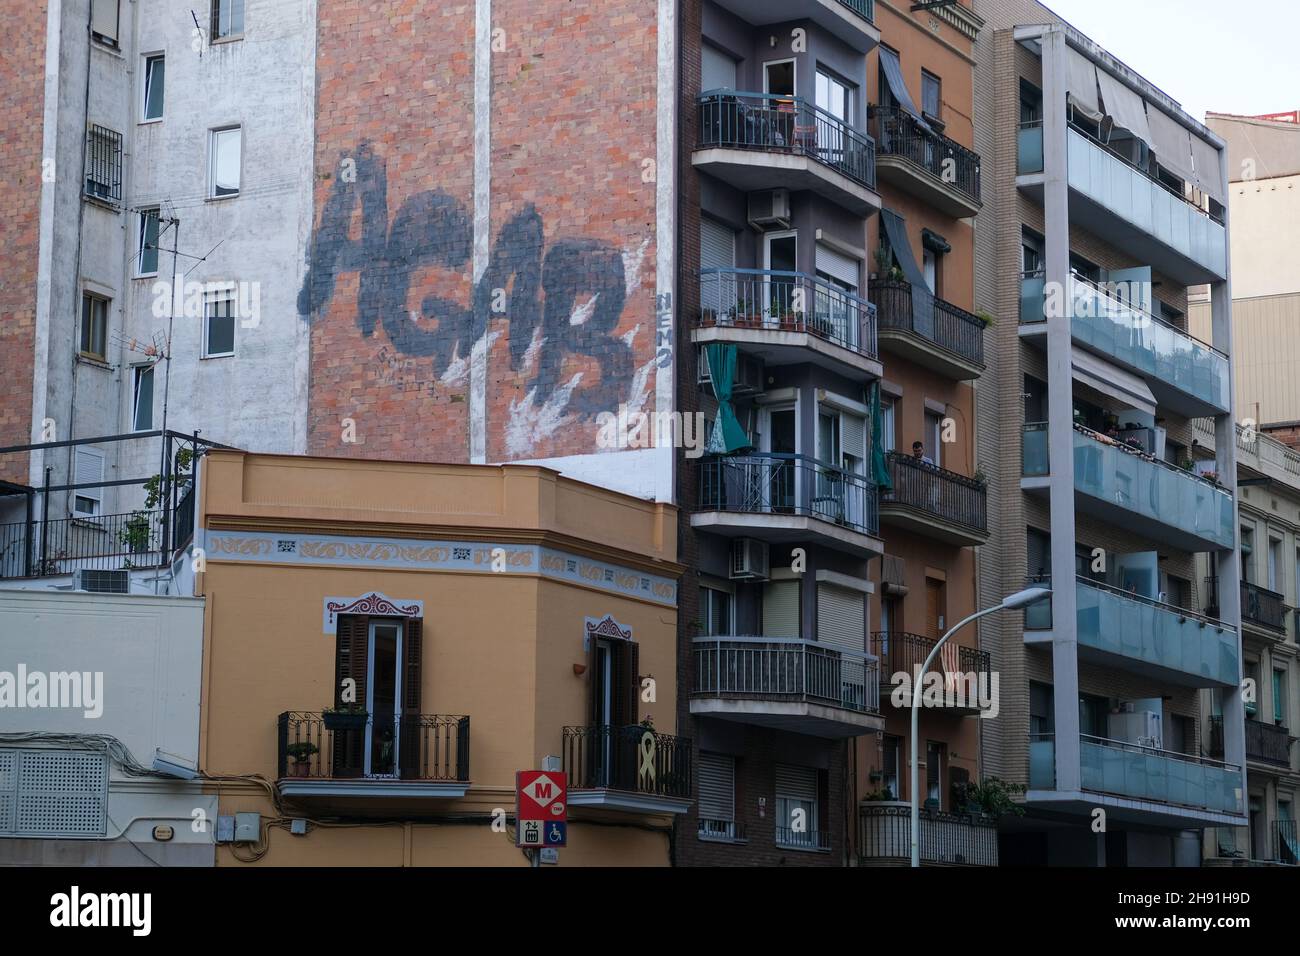 Barcelona, España - 5 de noviembre de 2021: AGAB: Sexo asignado al nacimiento graffiti en el edificio, Editorial Ilustrativa. Foto de stock